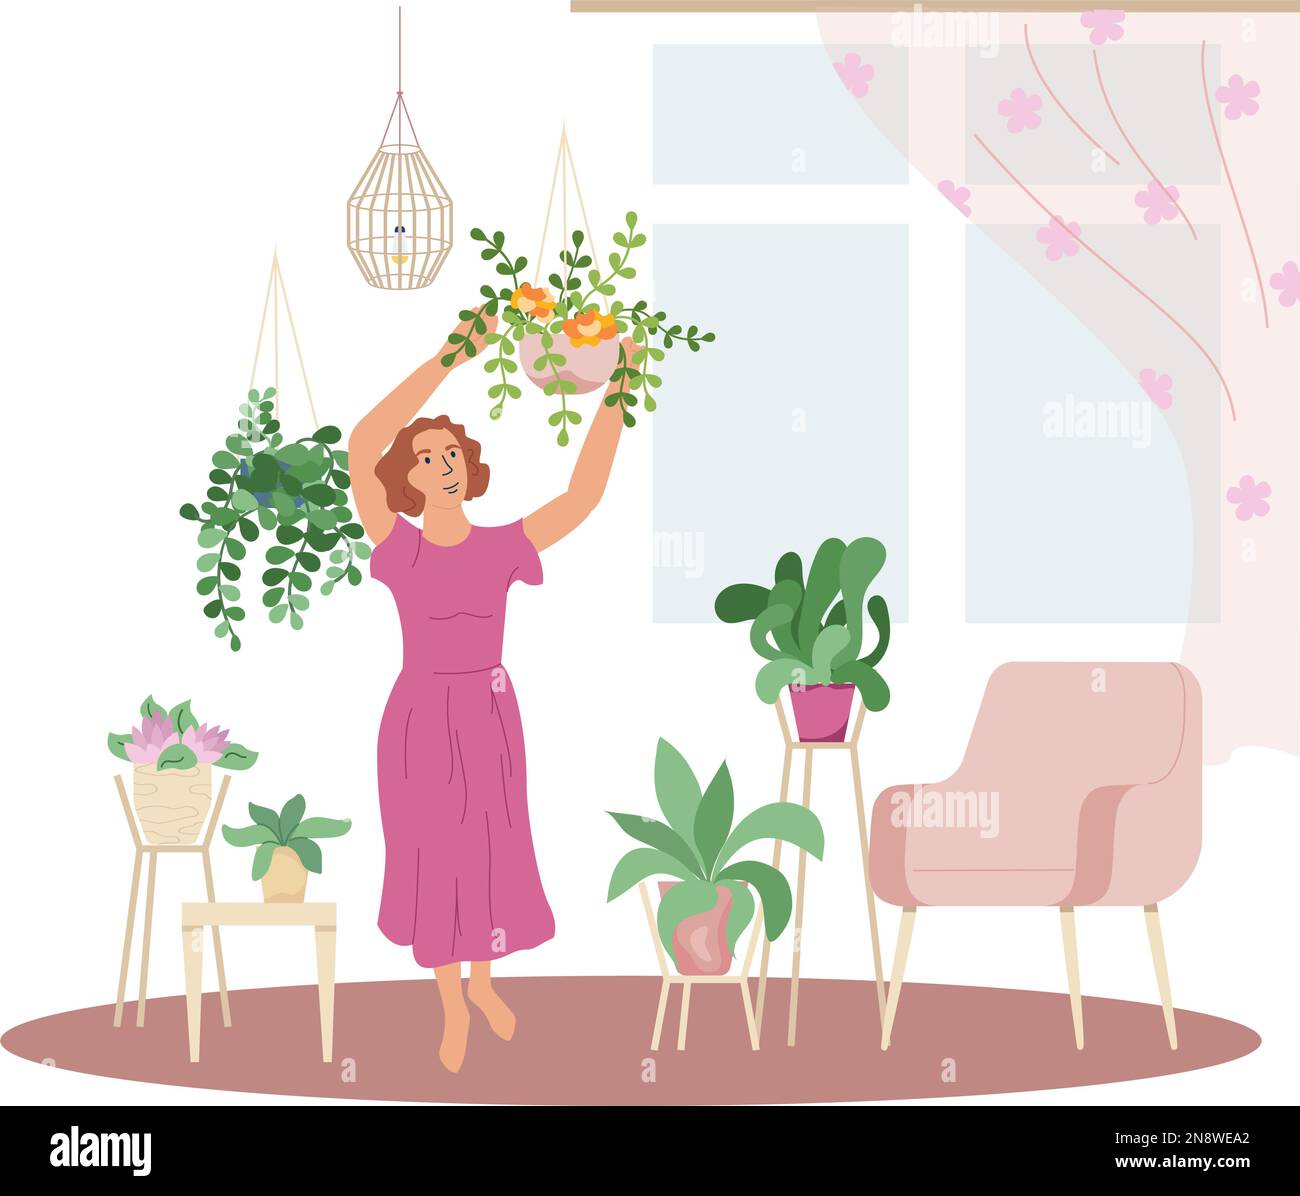 Wohngartenbau flache Komposition mit leerem Hintergrund und Blick auf das Wohnzimmer mit Frauen hängenden Pflanzen Vektorgrafik Stock Vektor